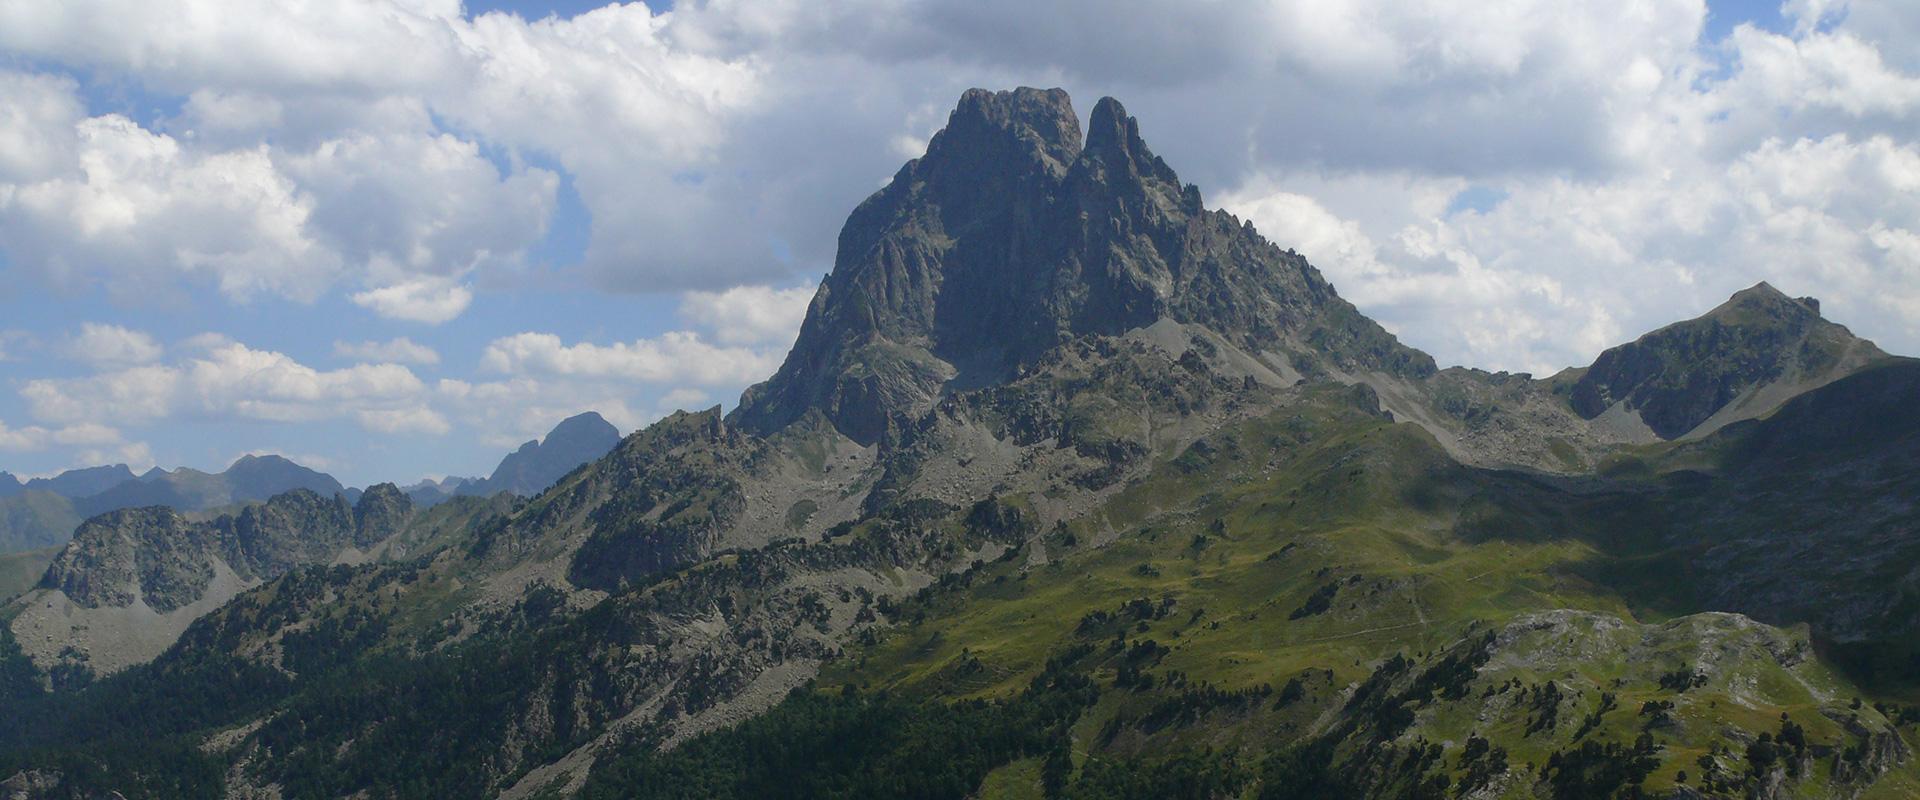 Le Pic du Midi d'Ossau, Pyrénées Atlantiques